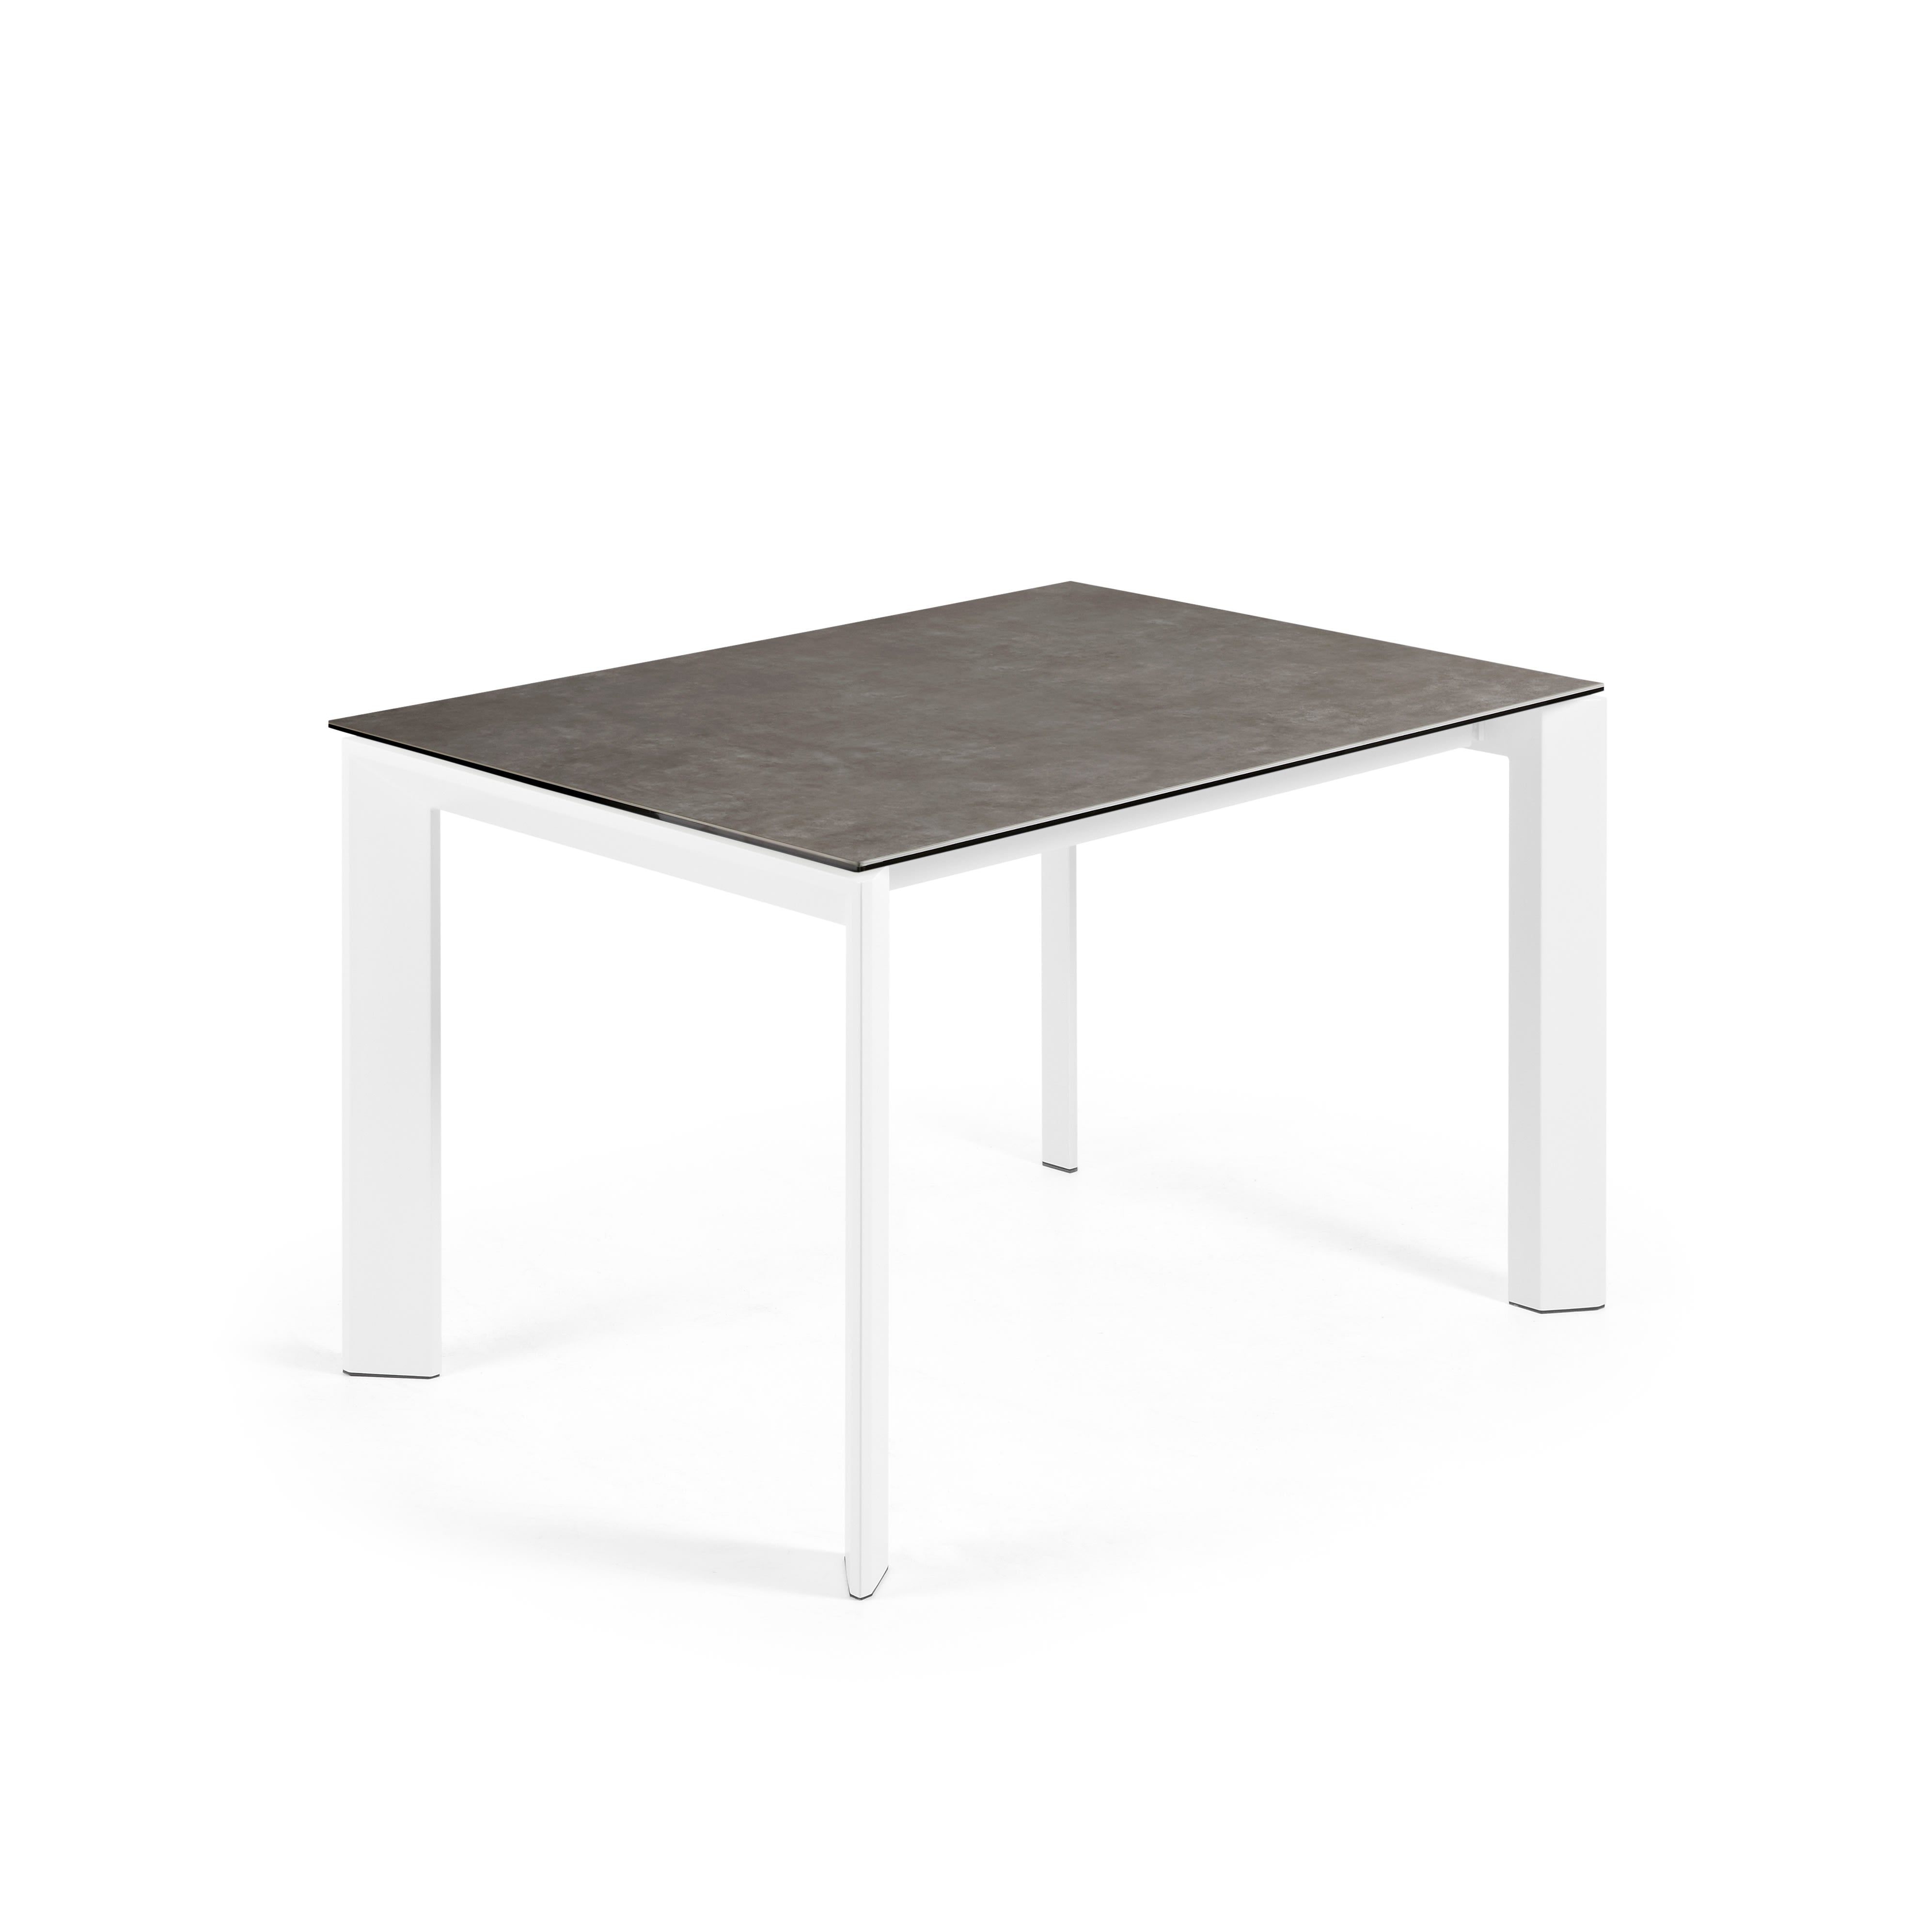 Axis kihúzható kerámia asztal Vulcano Ceniza befejezéssel, fehér acél lábakkal 120 (180) cm